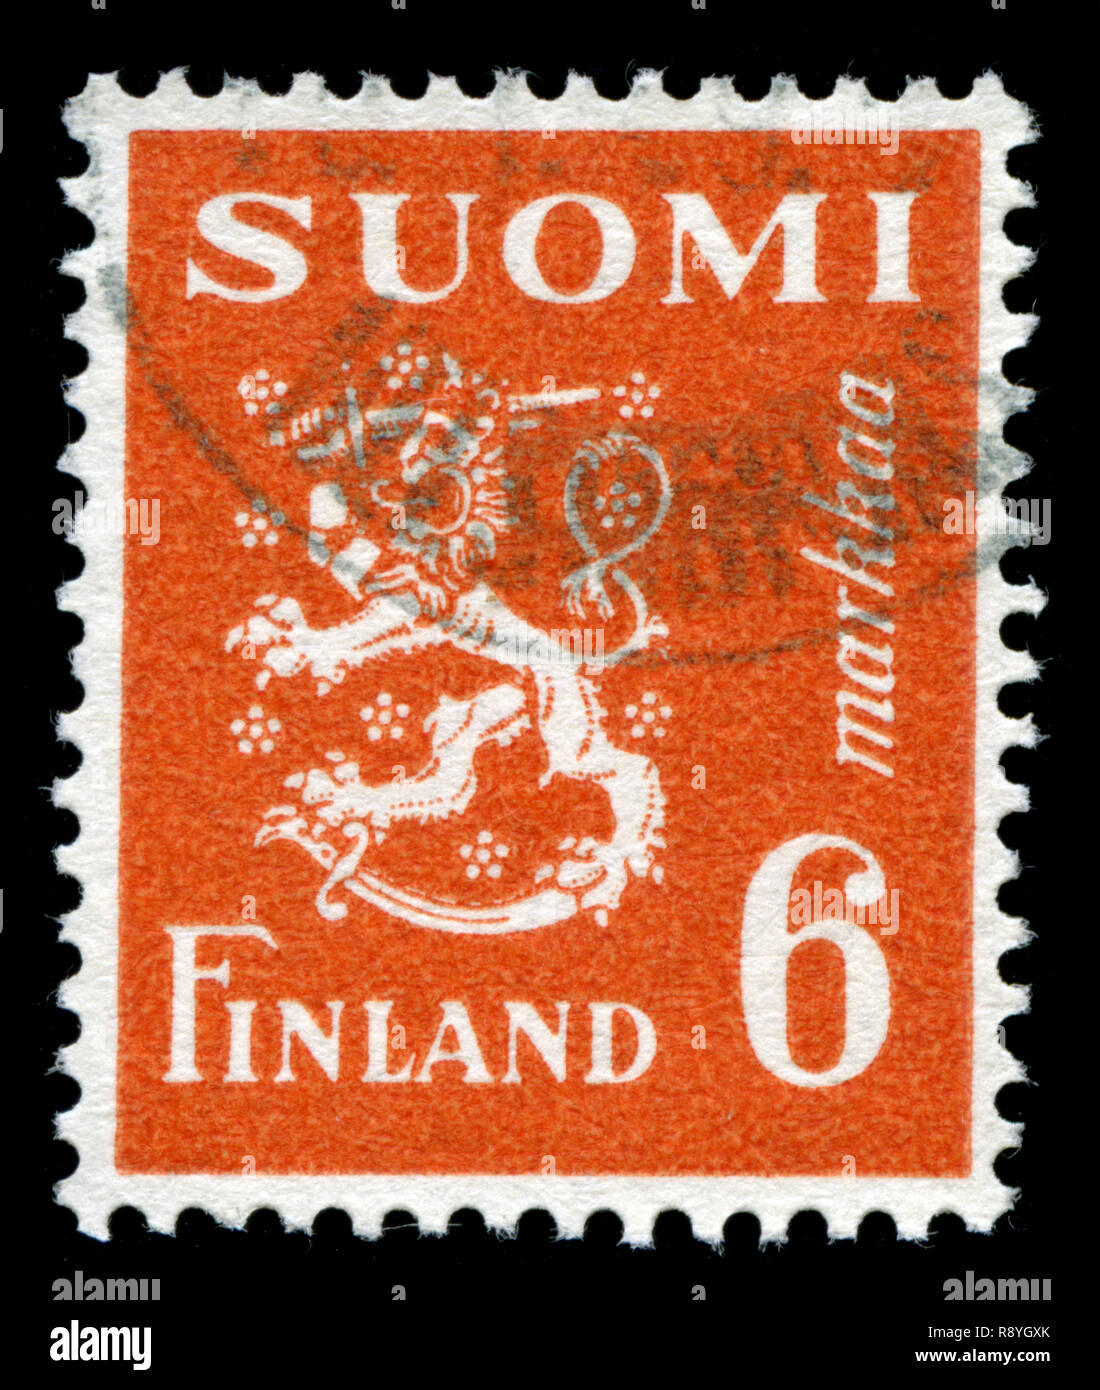 Timbre-poste de la Finlande dans le modèle 1930 Lion série émise en 1947 Banque D'Images